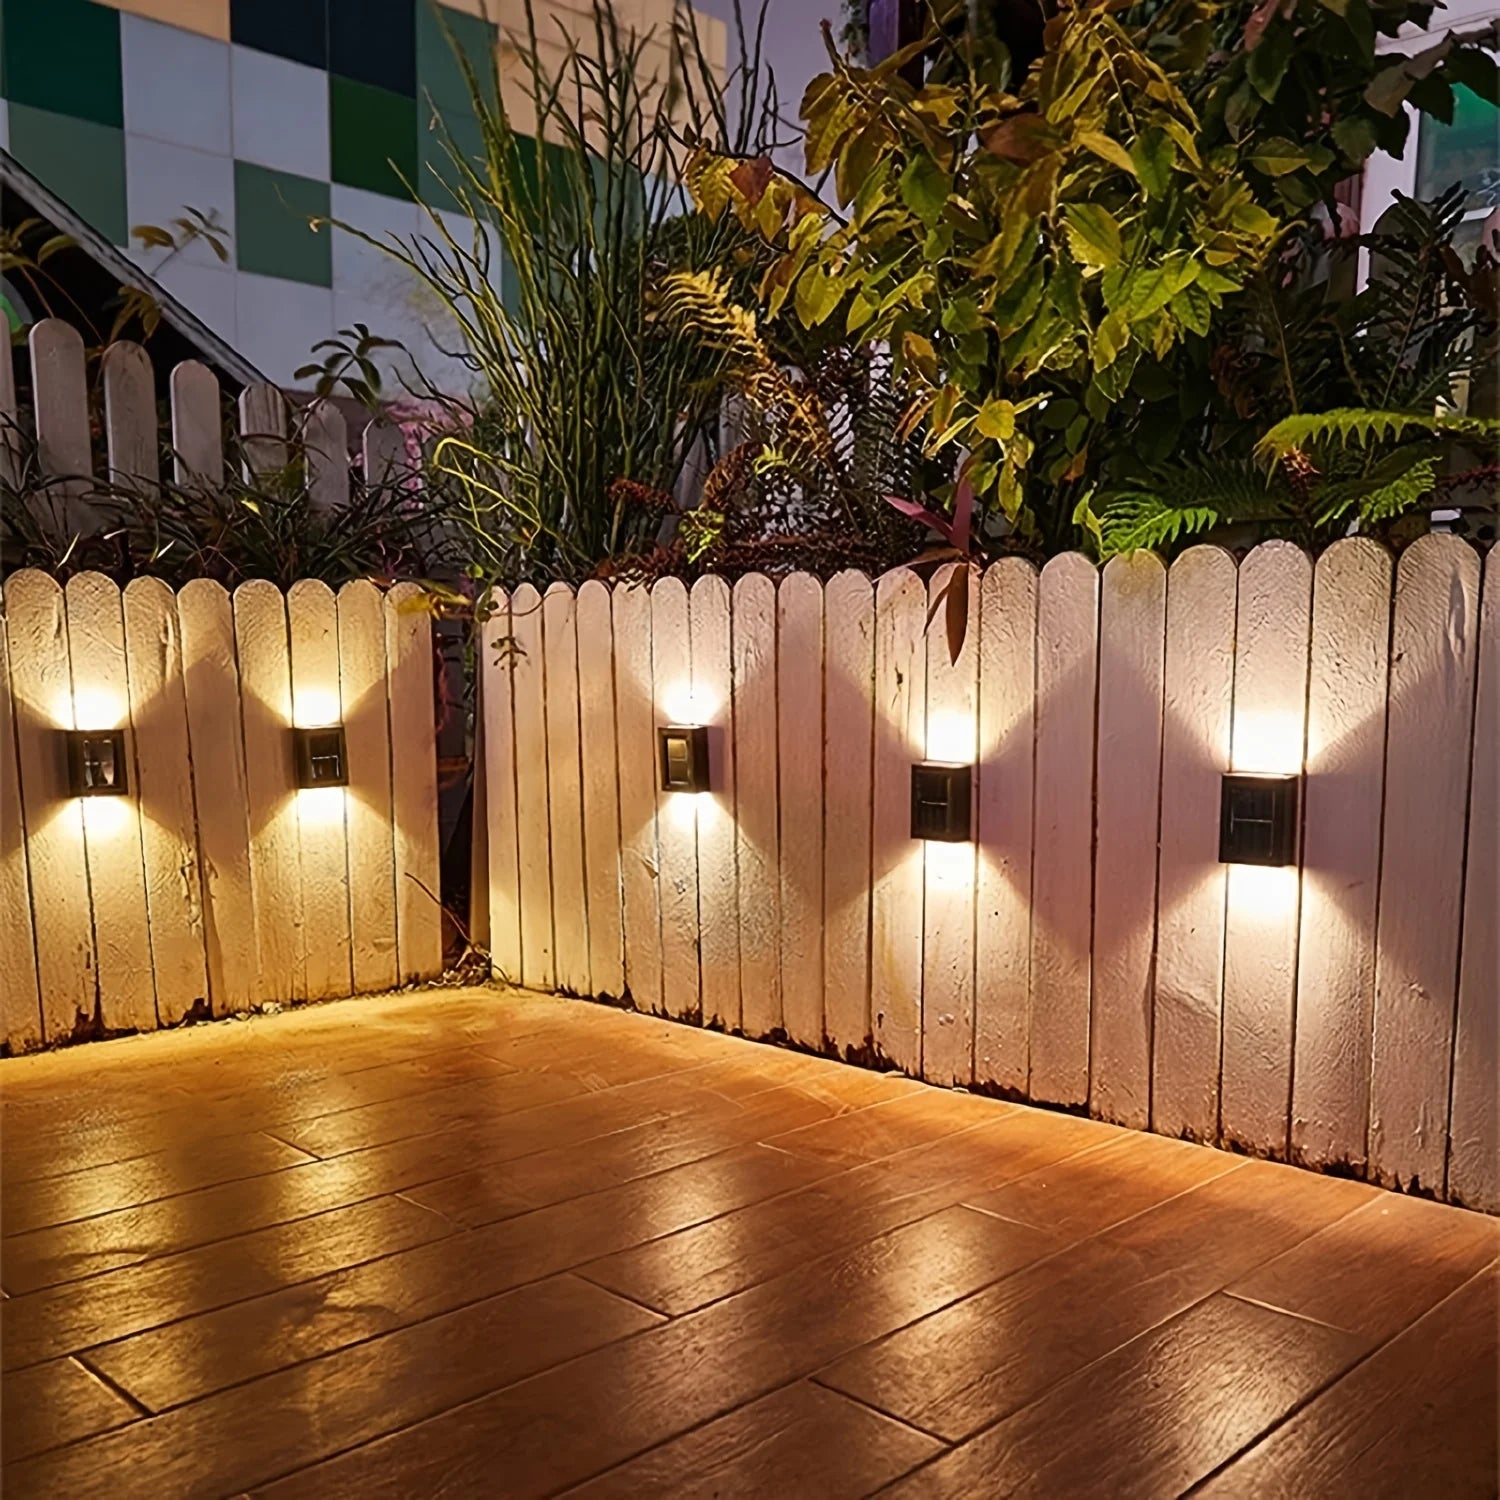 새로운 태양 벽 조명 야외 방수 LED 태양열 램프 위아래로 빛나는 조명 정원 발코니 야드 거리 장식 램프